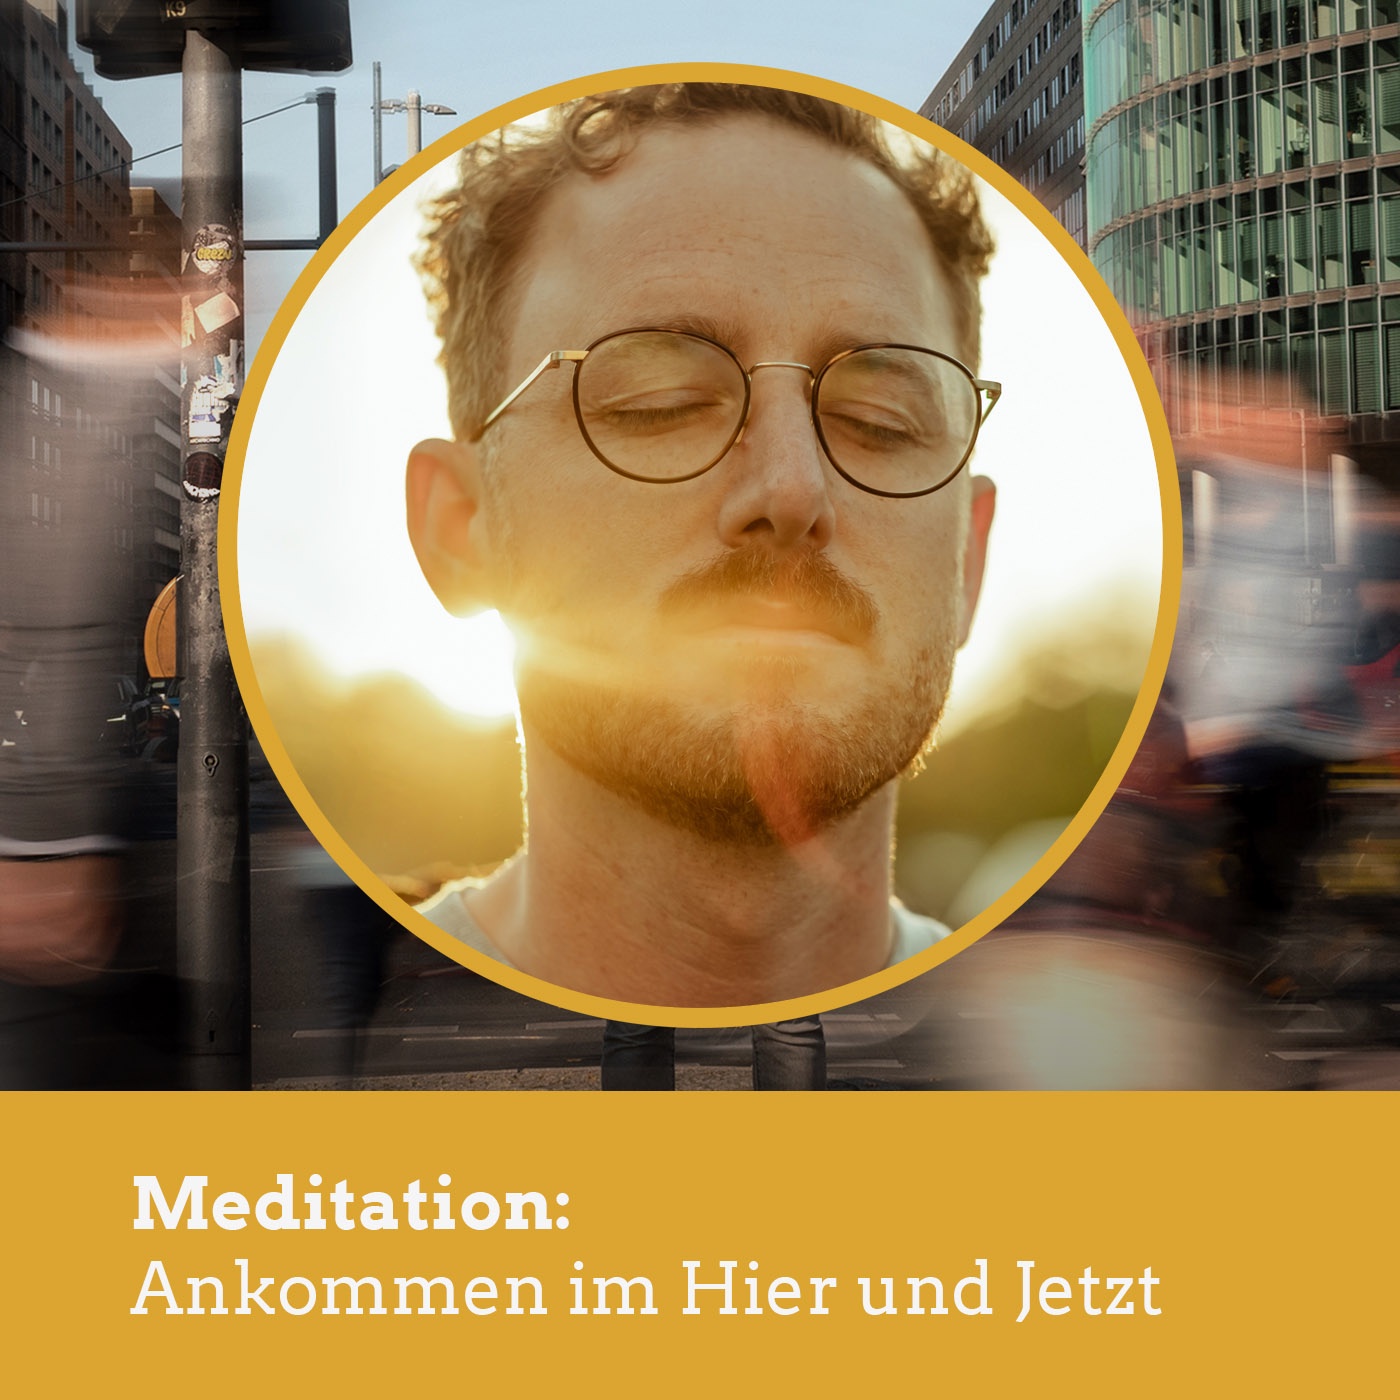 Meditation: Ankommen im Hier und Jetzt